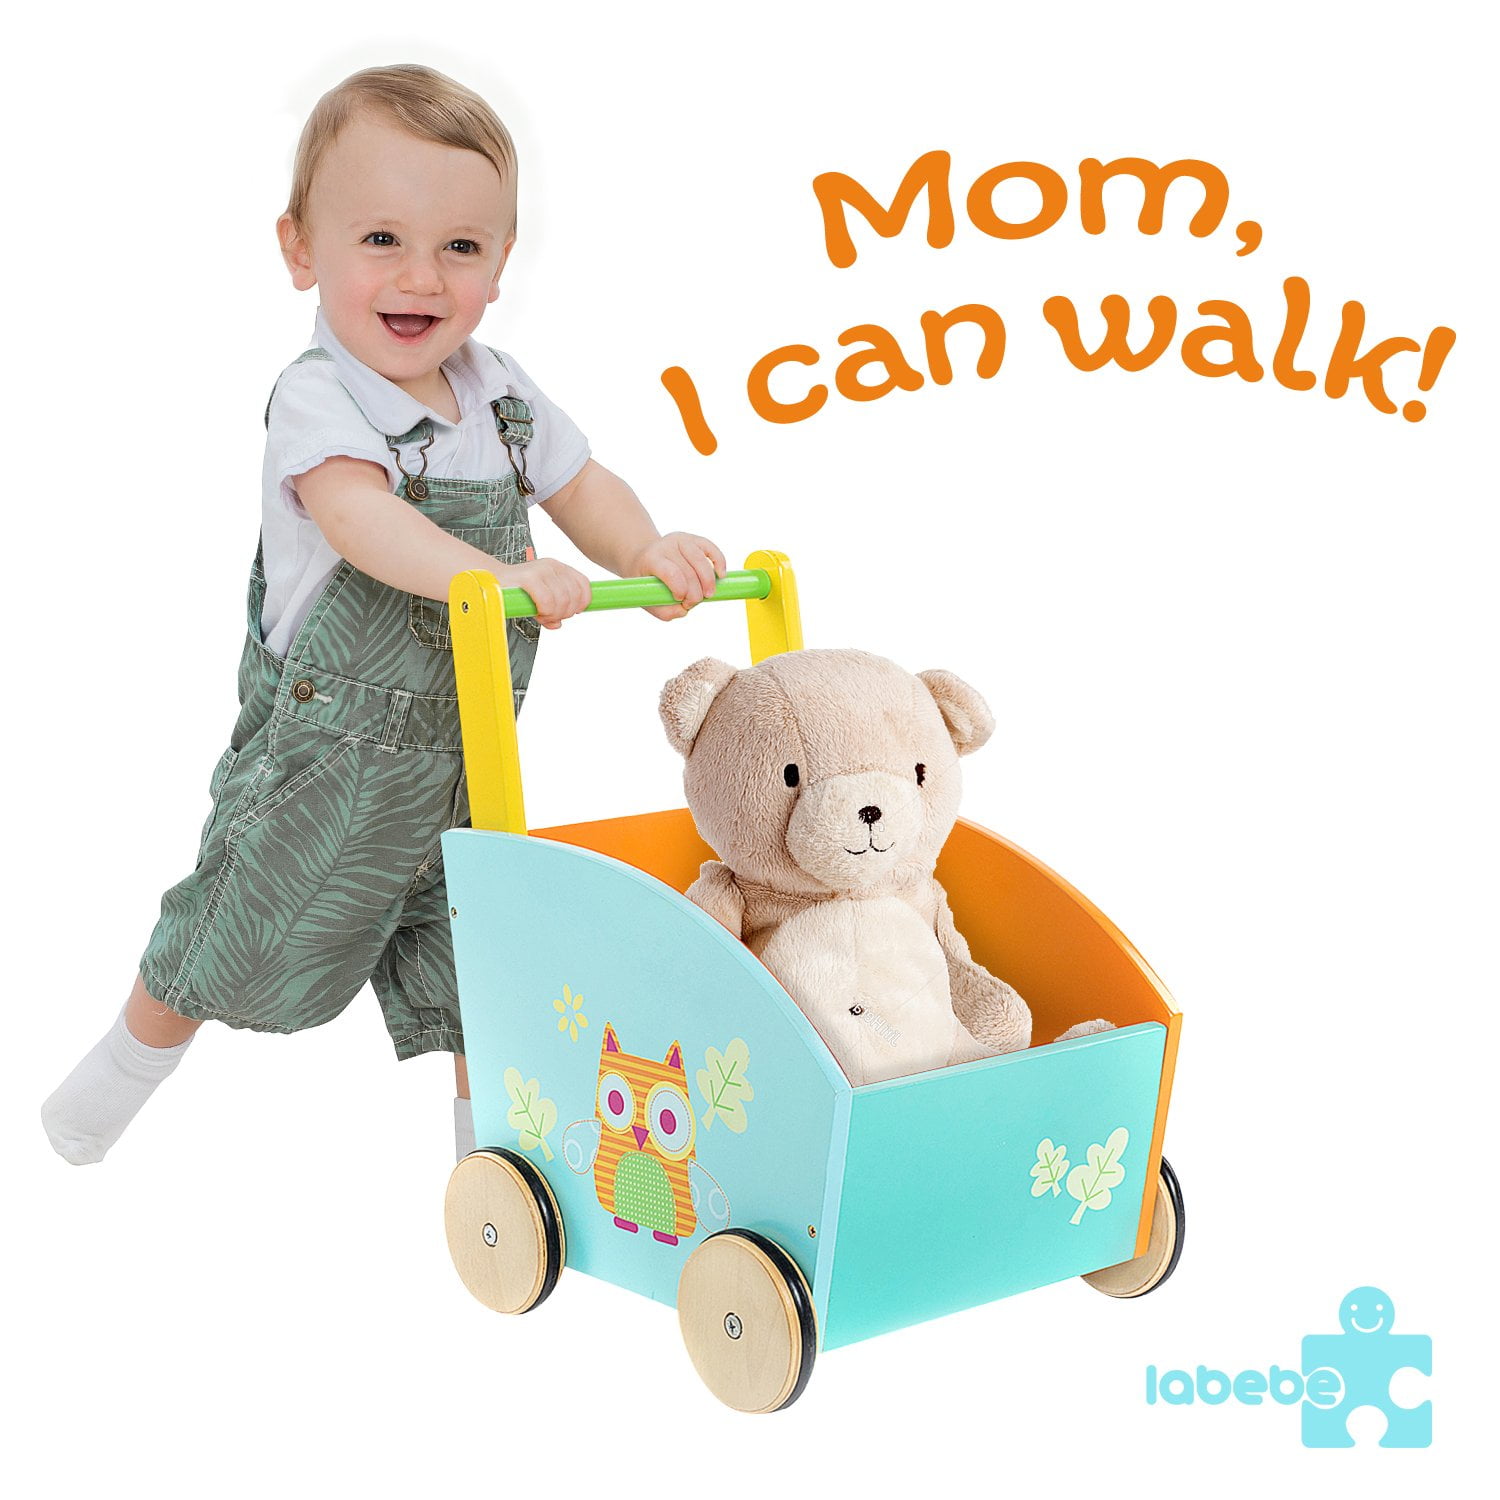 baby wooden push walker